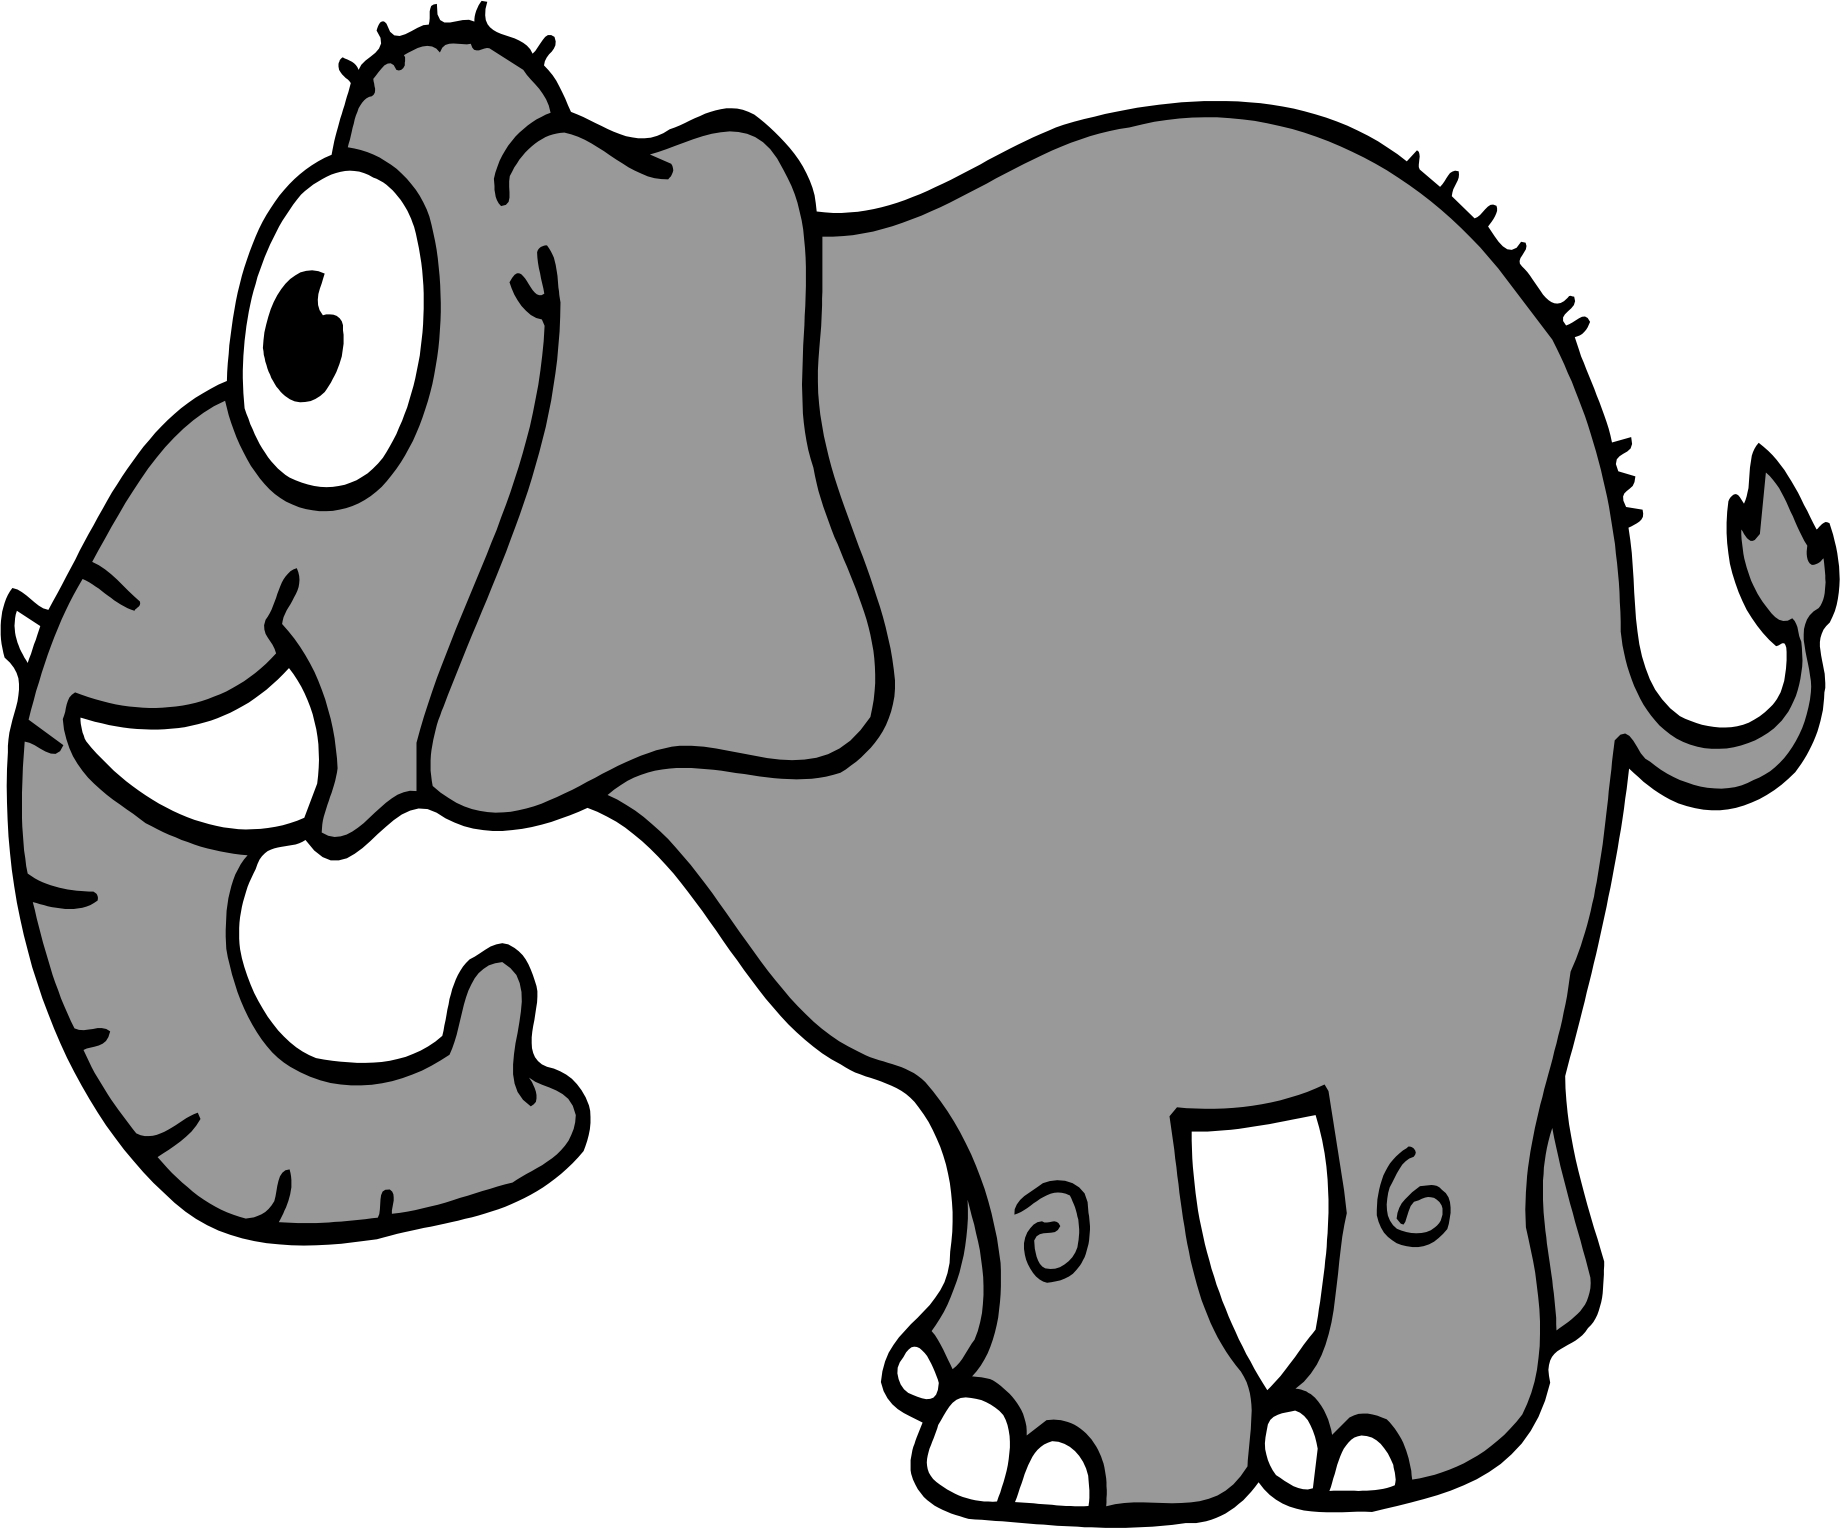 free clipart elephant cartoon - photo #39